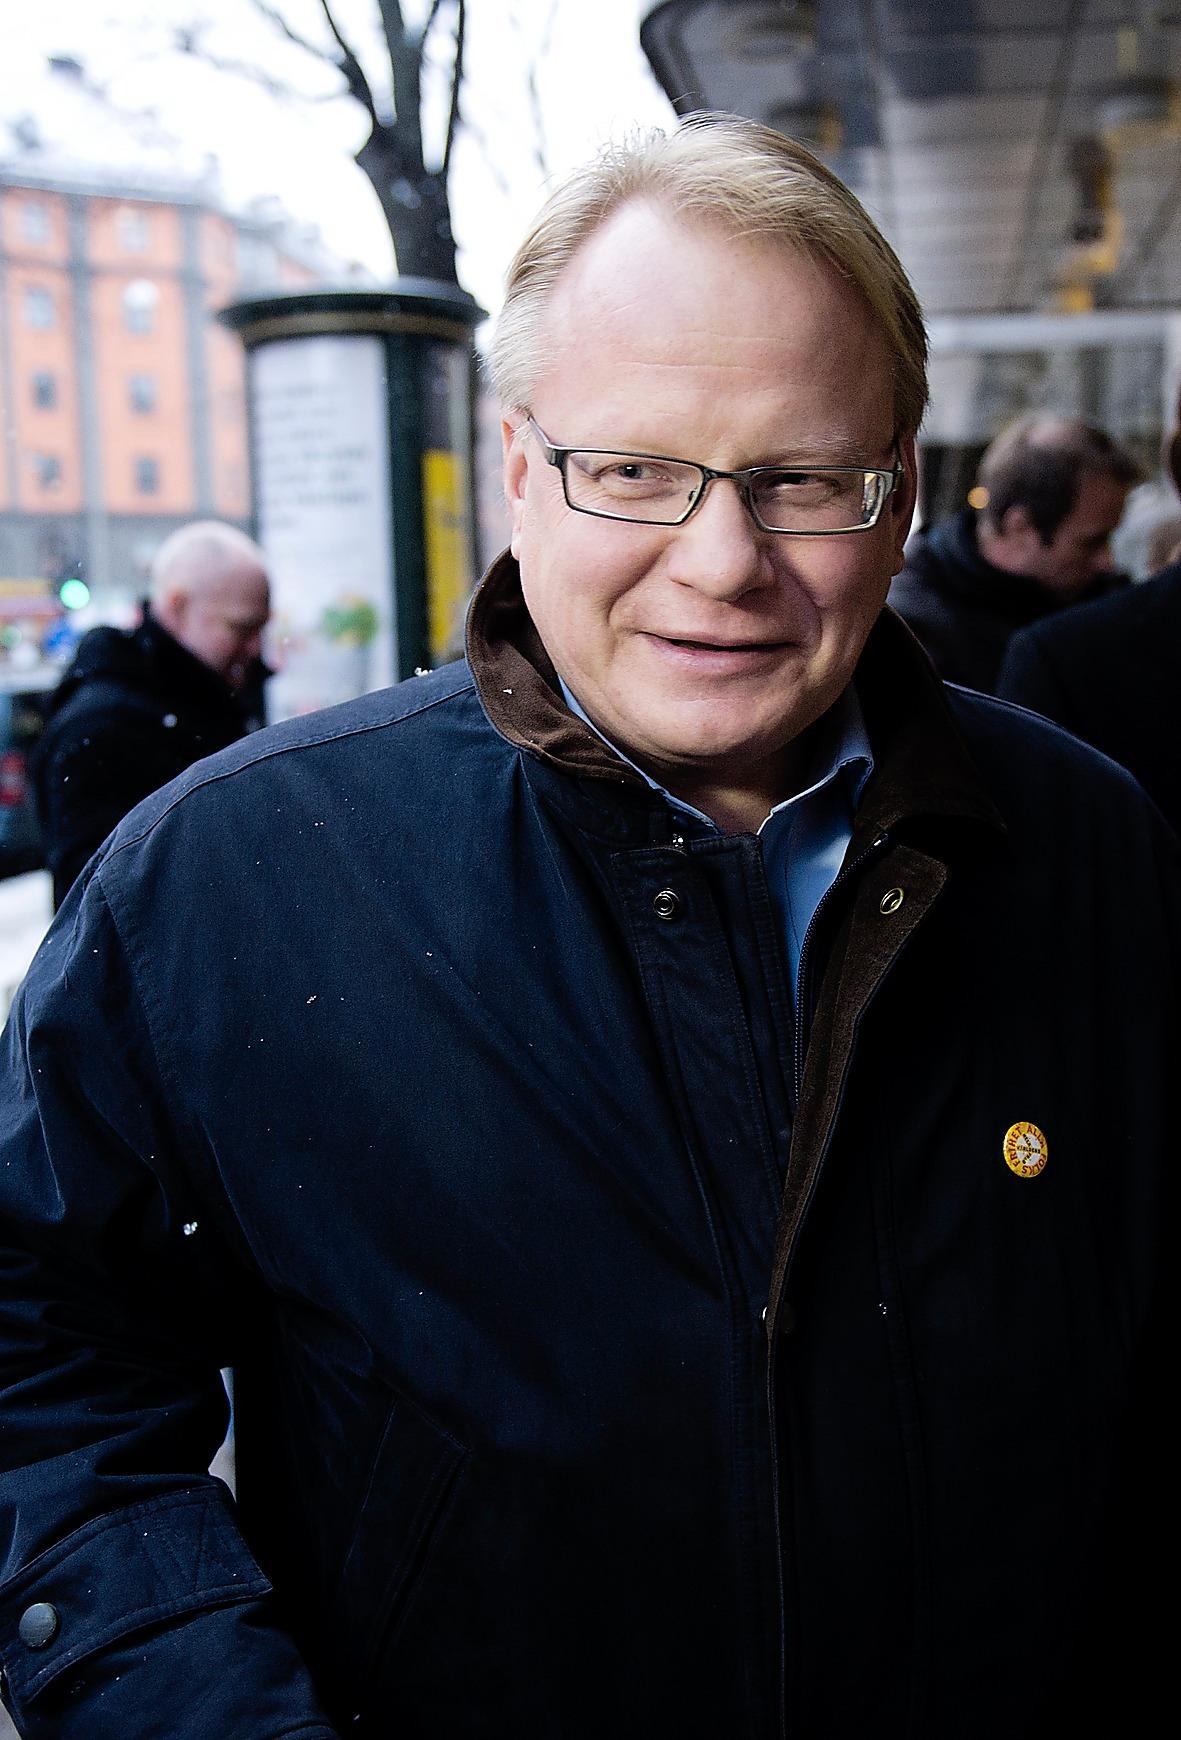 Peter Hultqvist, 53, riksdagsledamot och S-ordförande i Dalarna: Kommer från Dalarna, normalt ett av skogslänen. Men förra gången lierade man sig med vänsterfalangen och blev avgörande för att Håkan Juholt skulle kunna väljas.